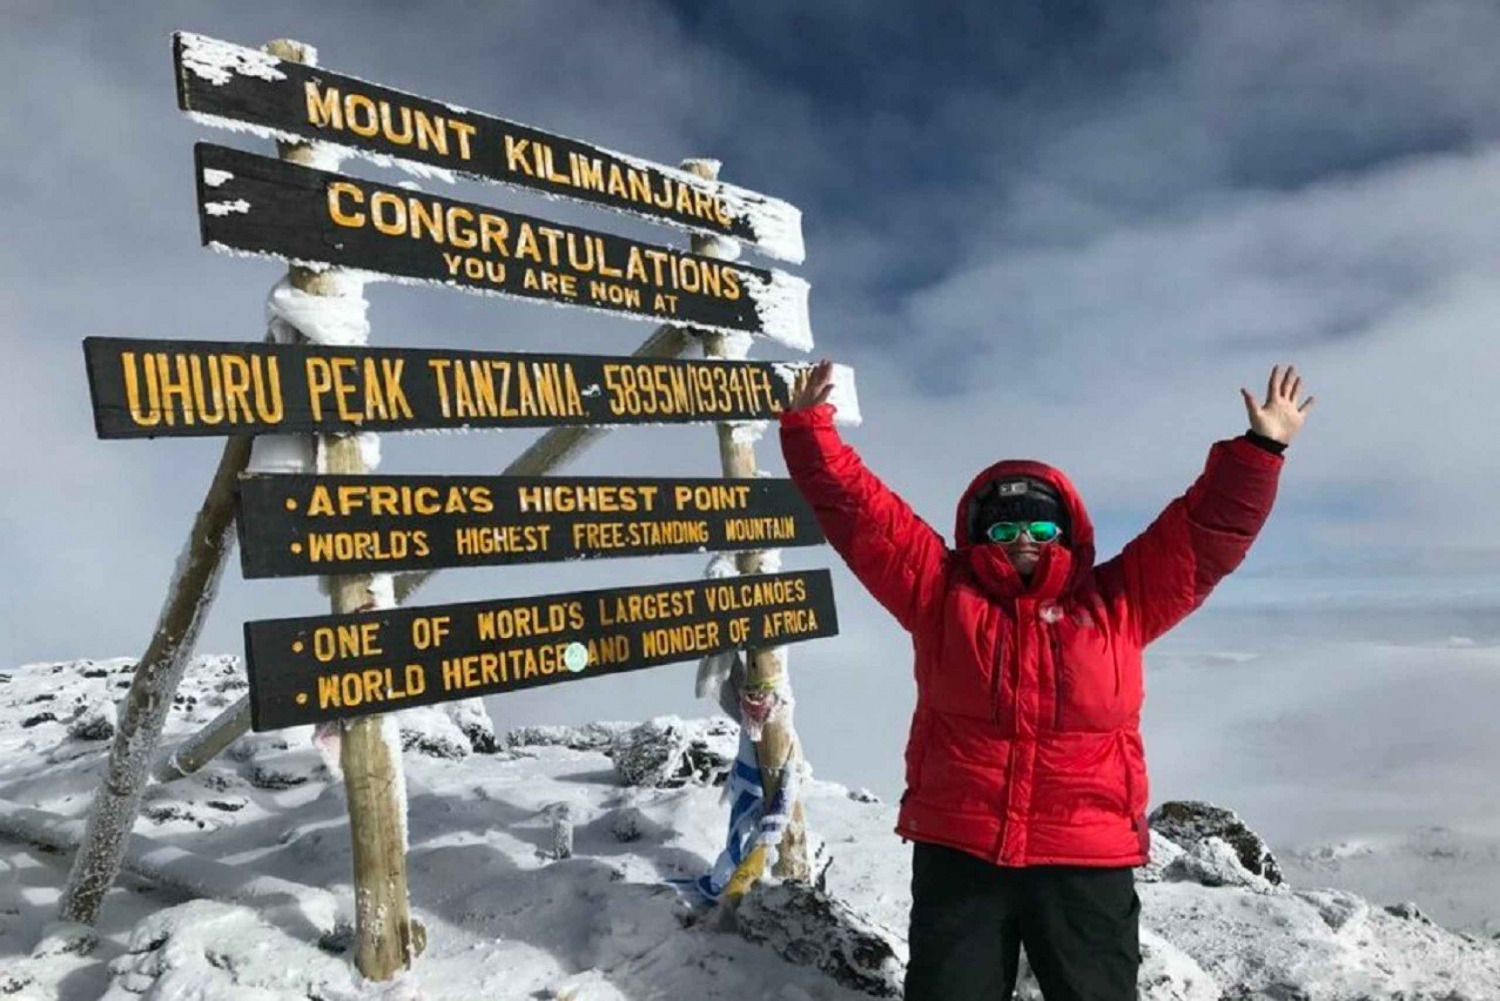 Rota de Lemosho de escalada de 7 dias no Kilimanjaro